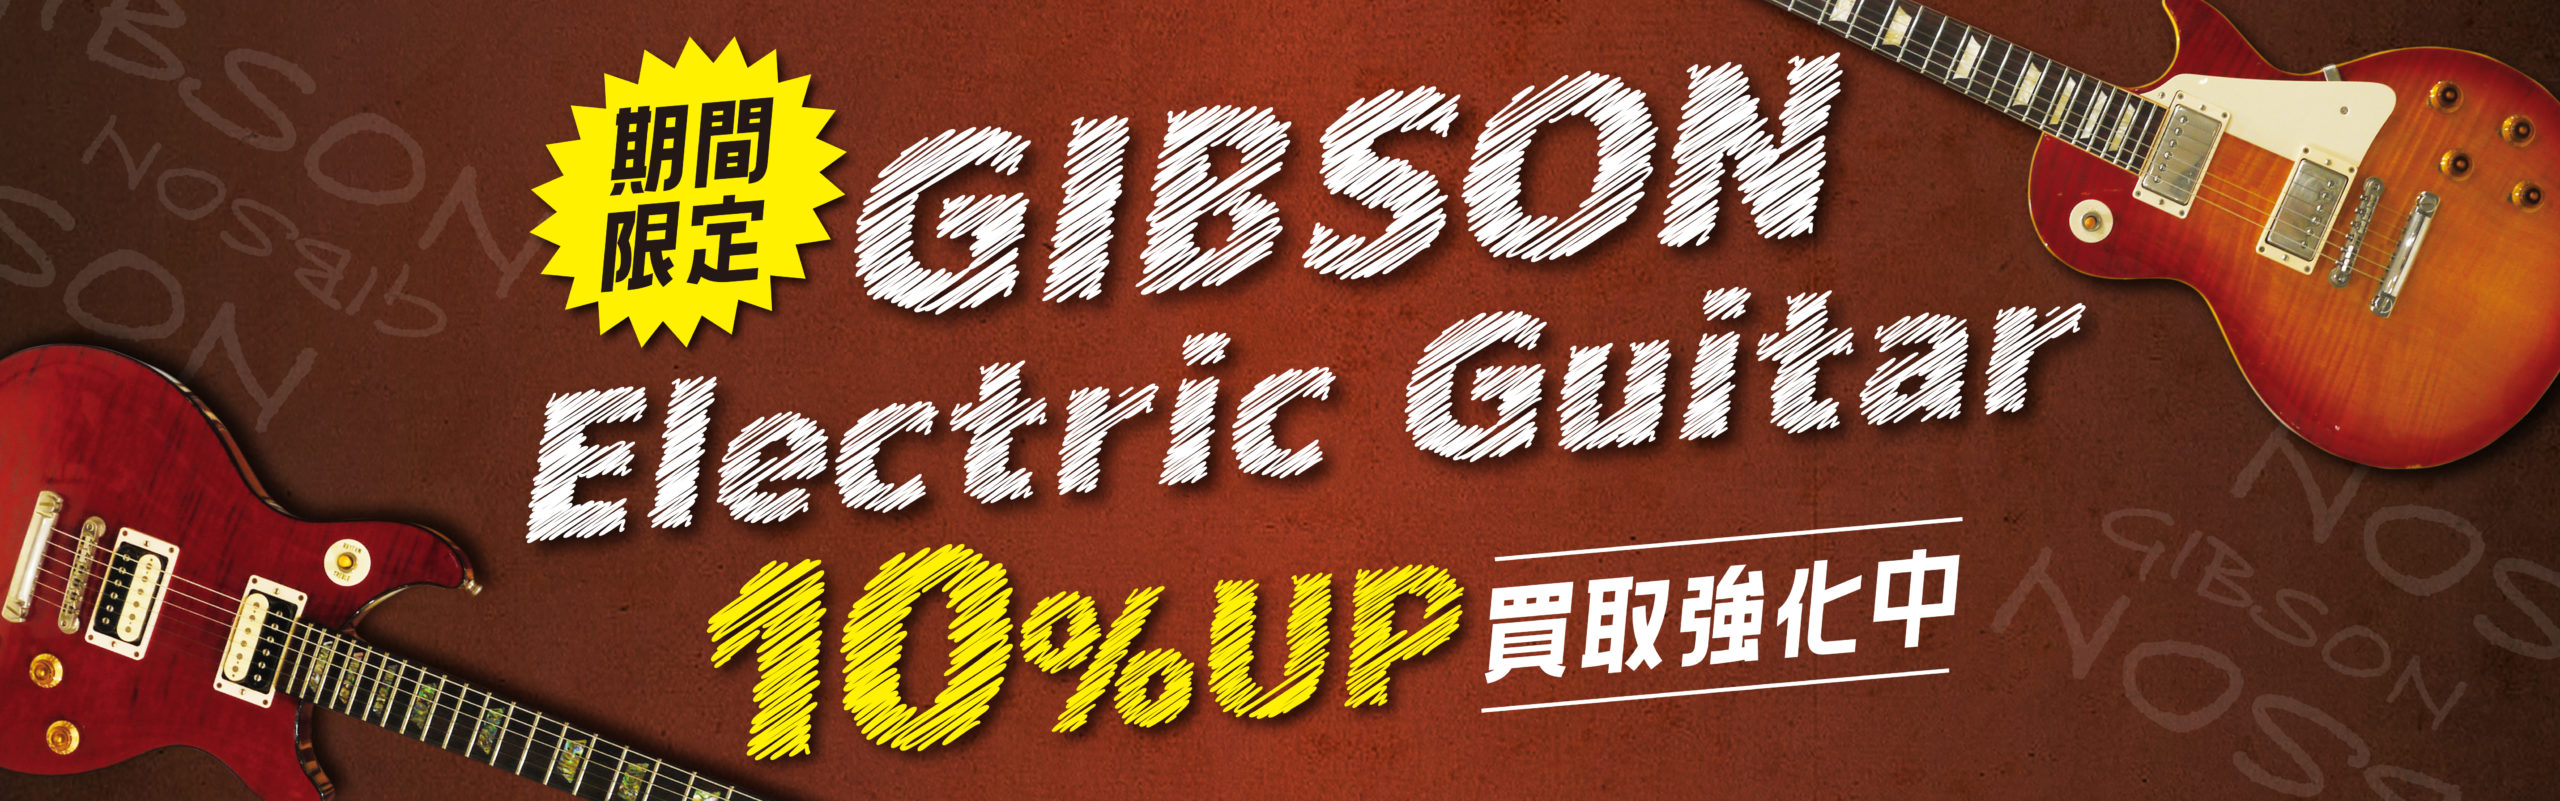 Gibsonエレキギター買取強化キャンペーン